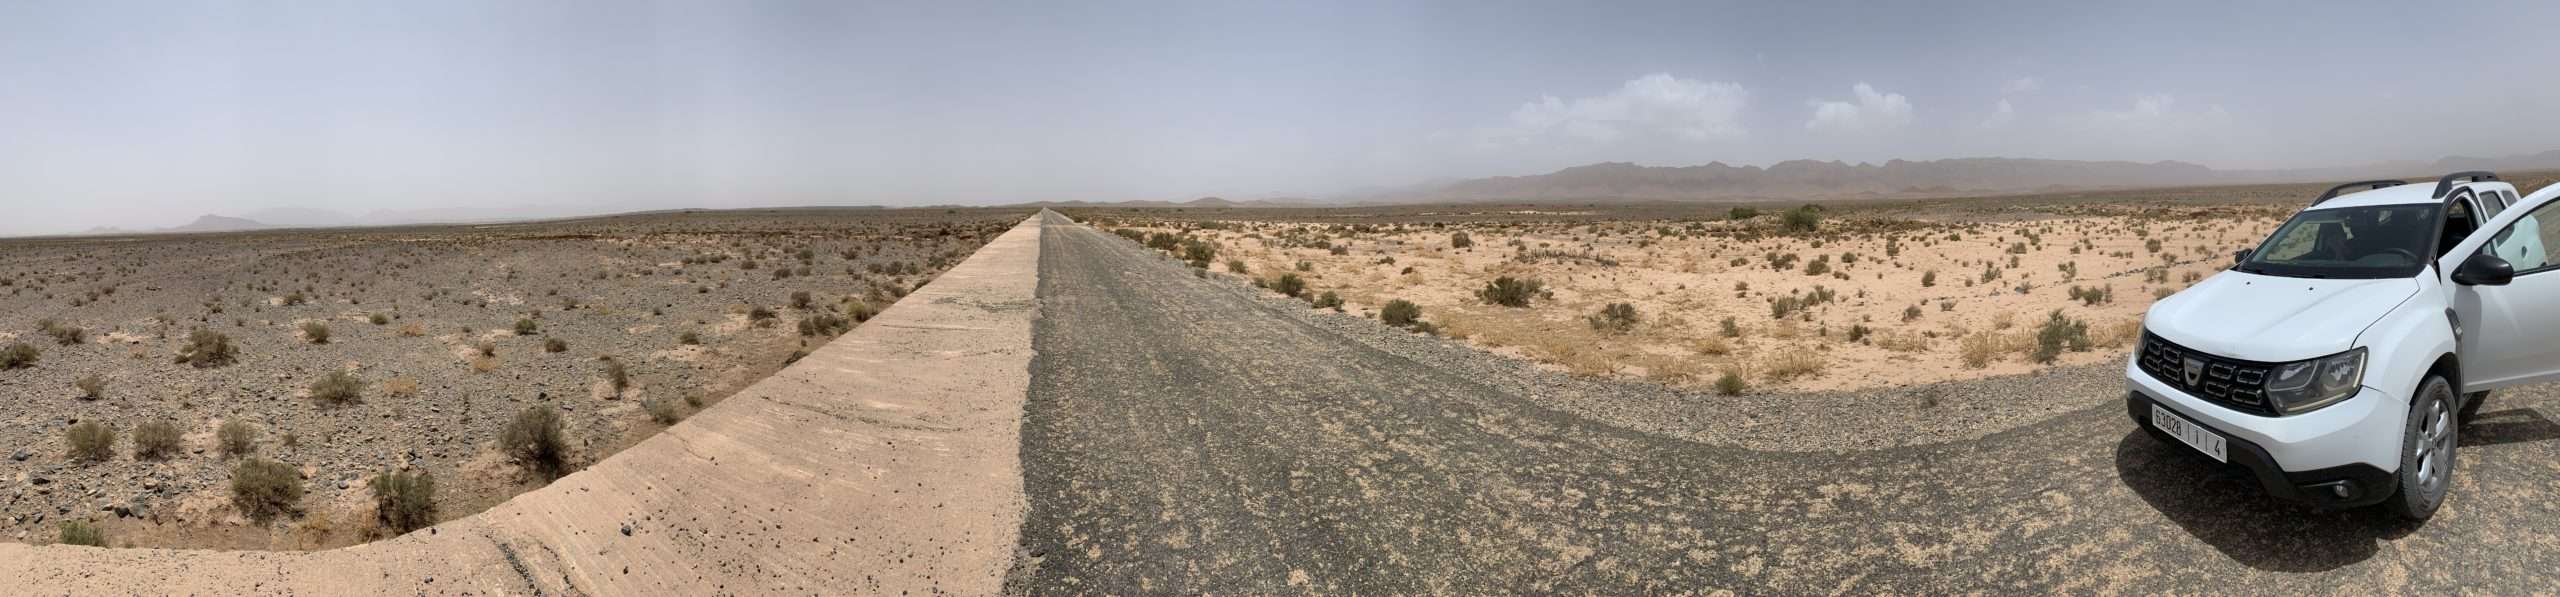 Carretera Marruecos